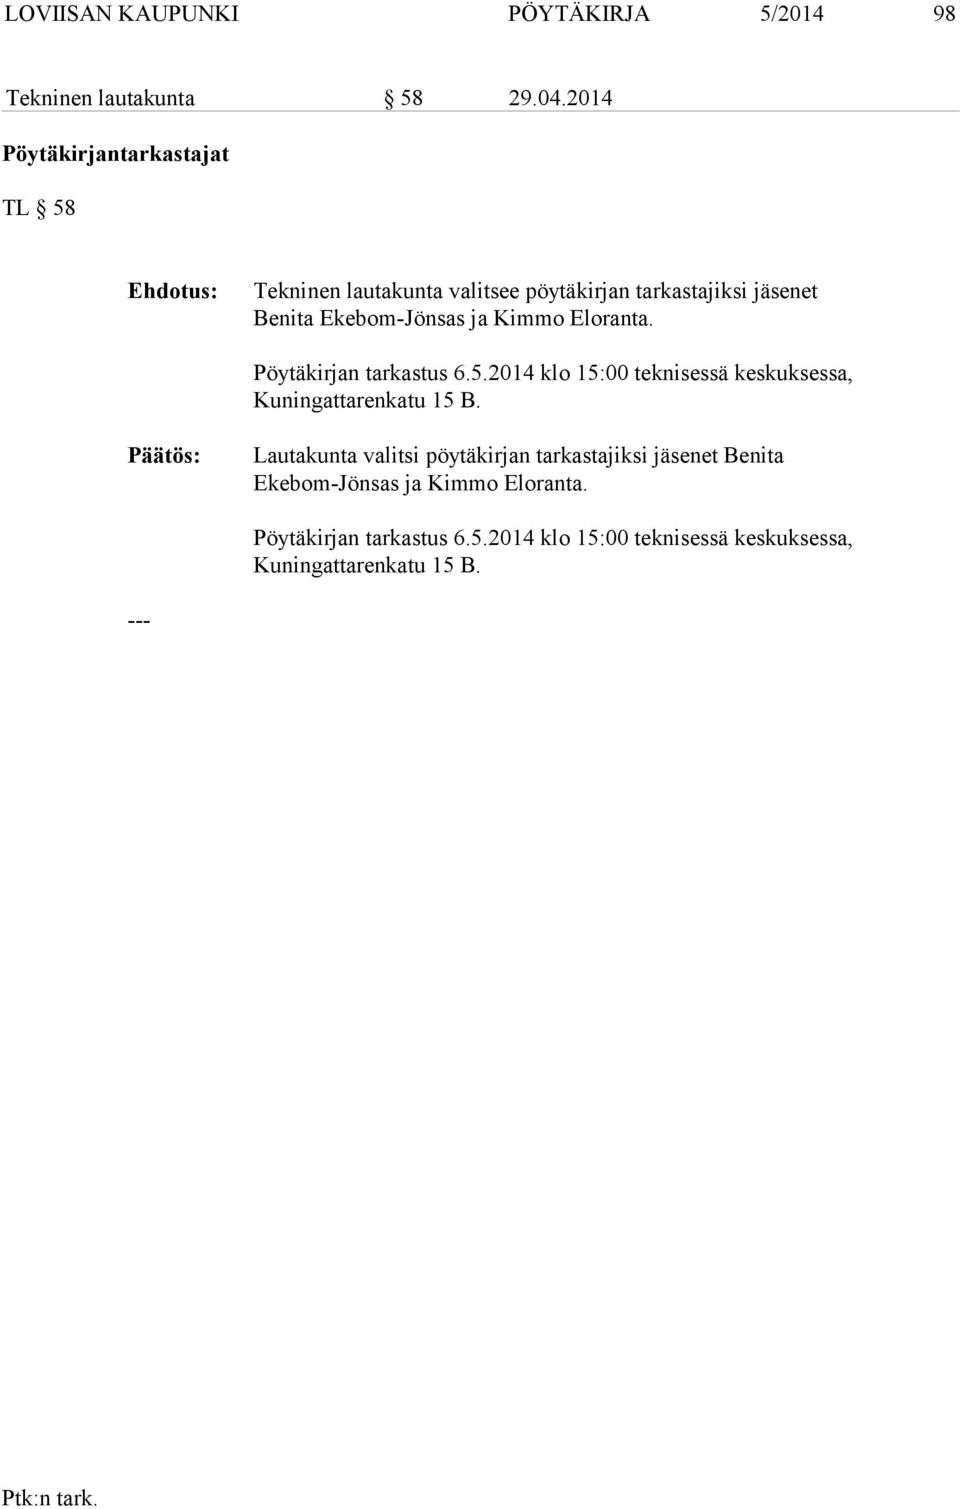 ja Kimmo Eloranta. Pöytäkirjan tarkastus 6.5.2014 klo 15:00 teknisessä keskuksessa, Kuningattarenkatu 15 B.